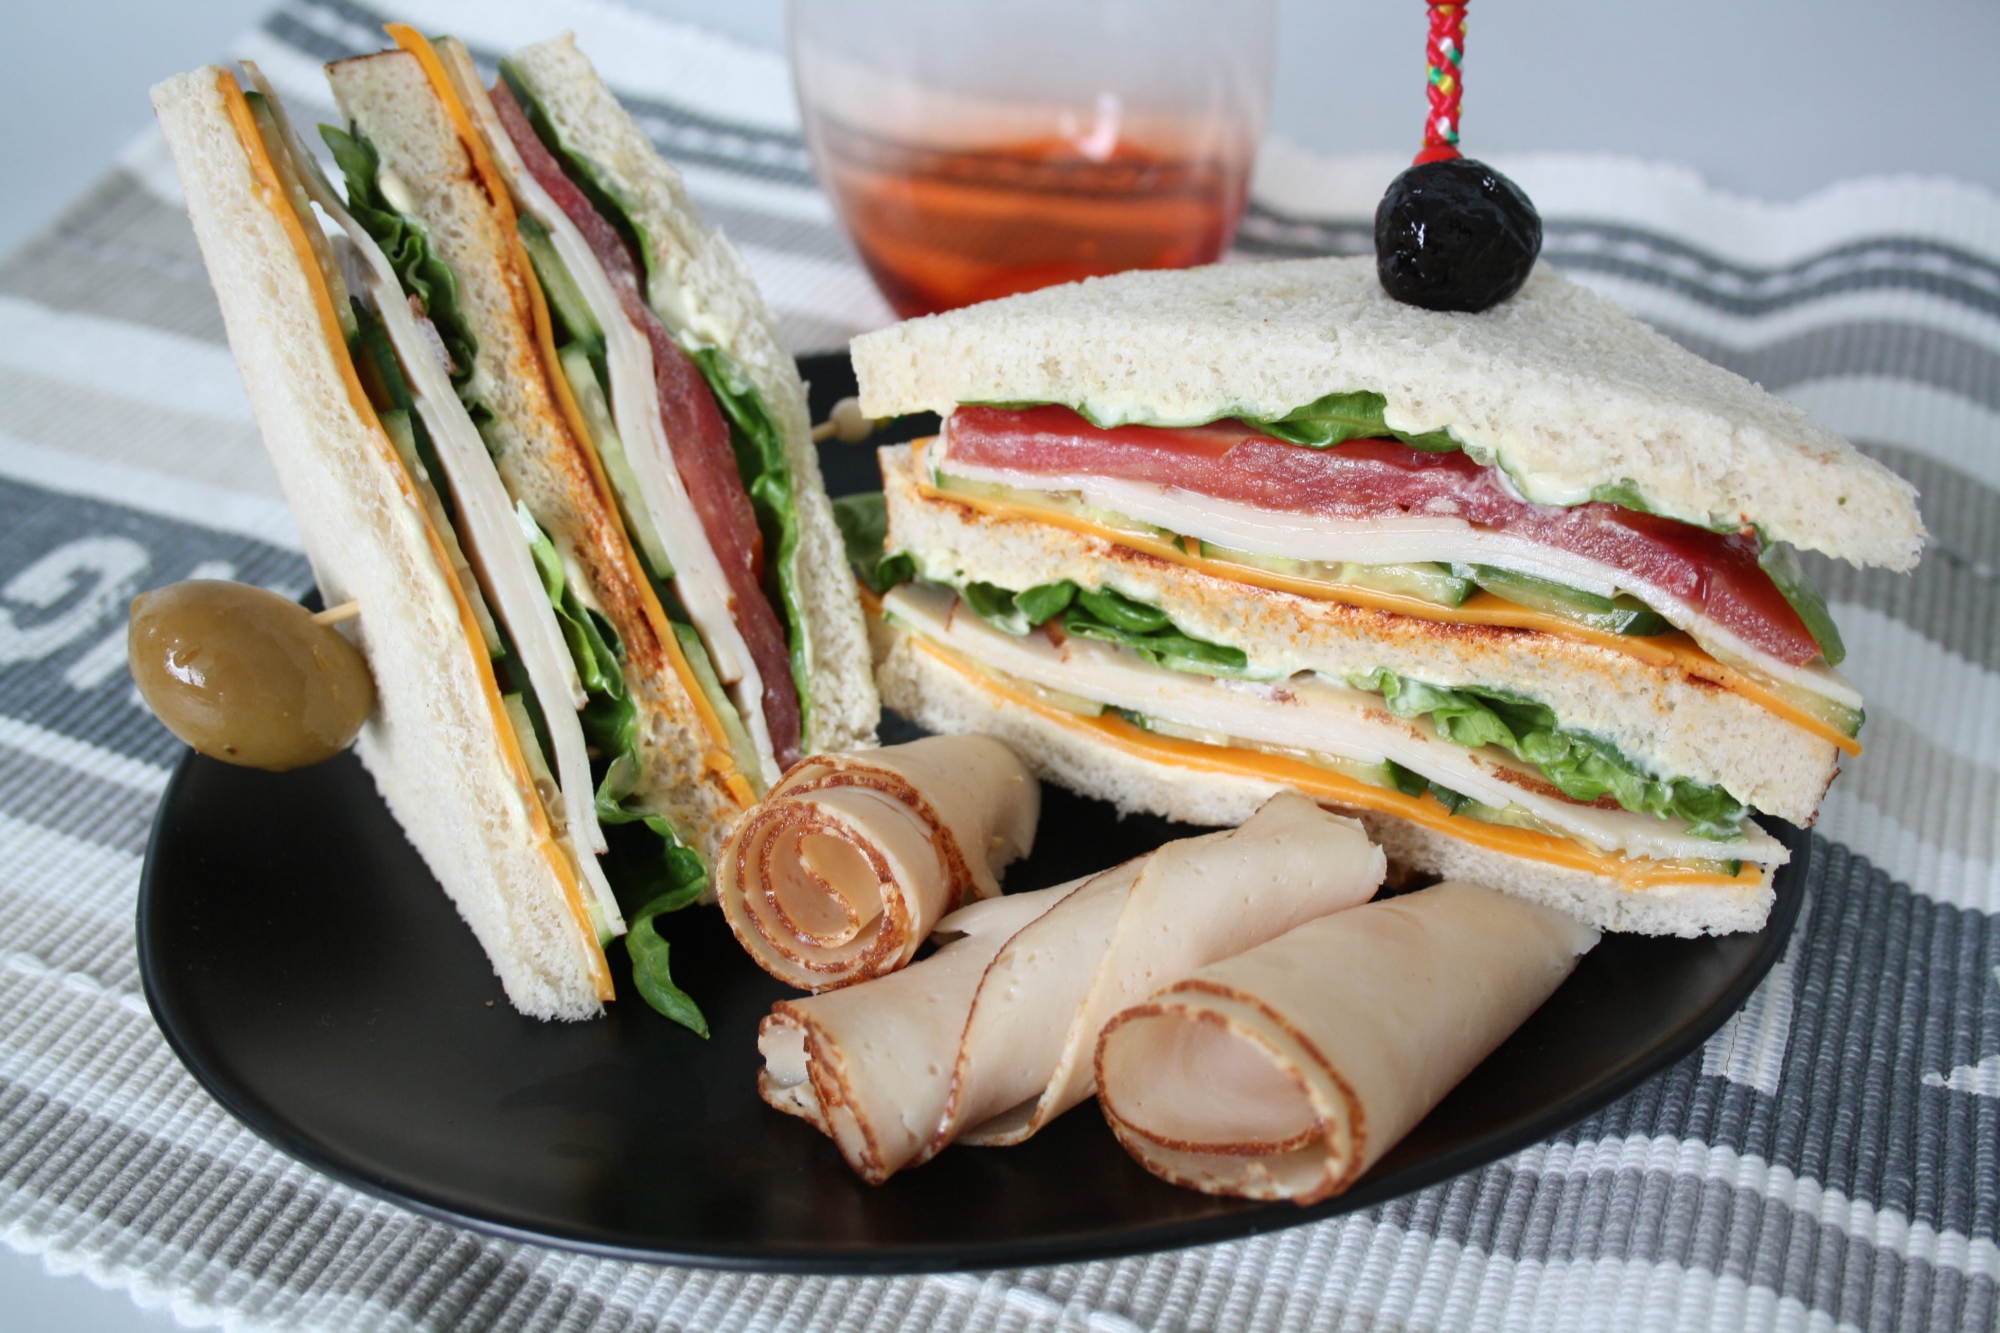 Sandwich club - 